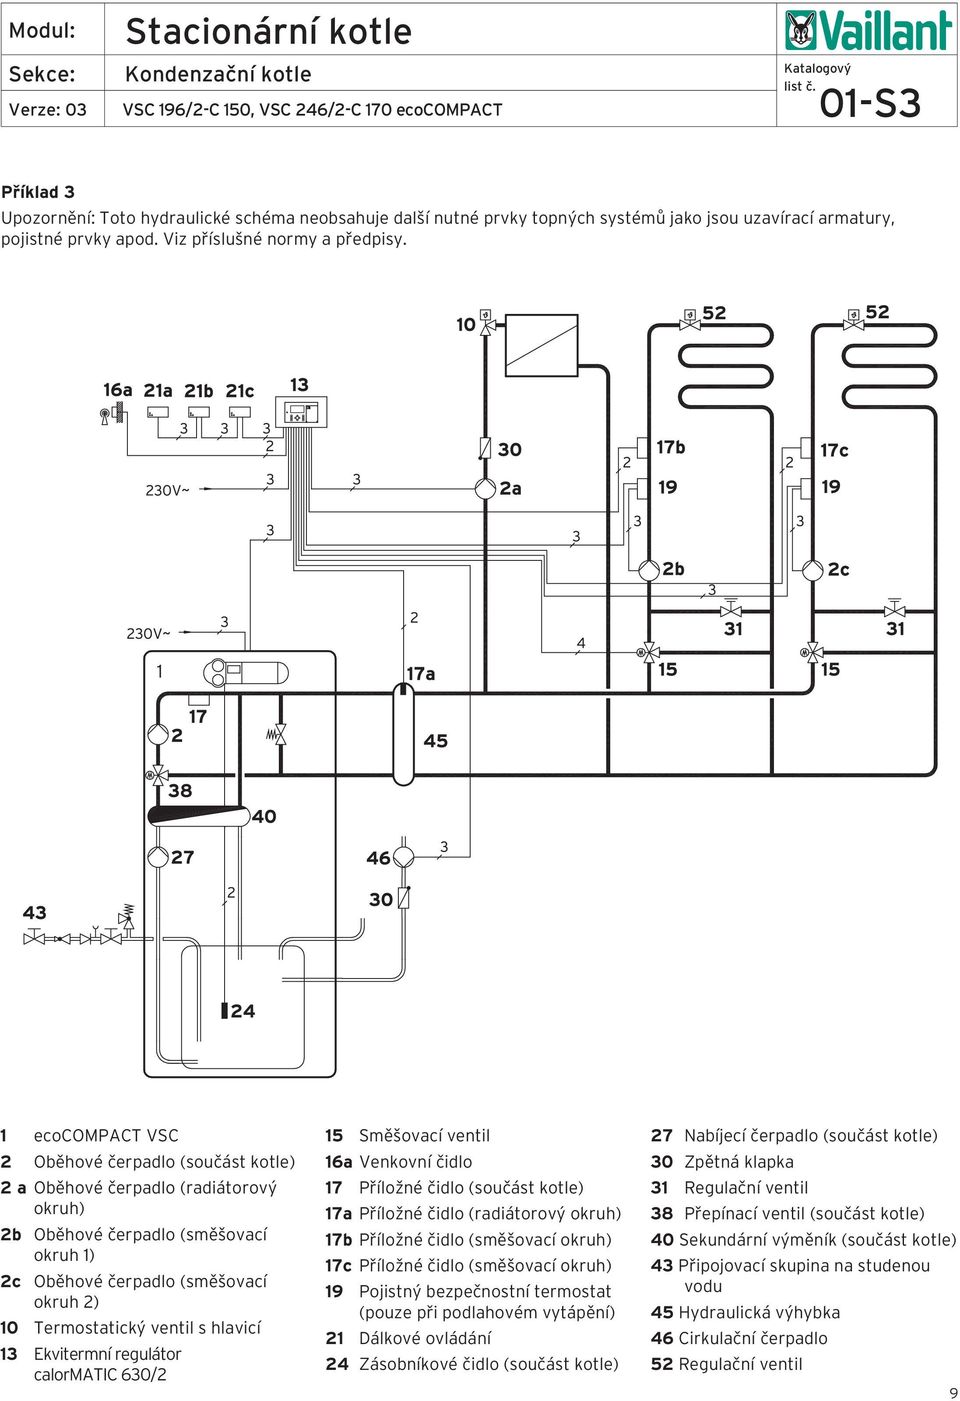 hlavicí 13 Ekvitermní regulátor calormatic 630/2 15 Směšovací ventil 16a Venkovní čidlo 17 Příložné čidlo (součást kotle) 17a Příložné čidlo (radiátorový okruh) 17b Příložné čidlo (směšovací okruh)